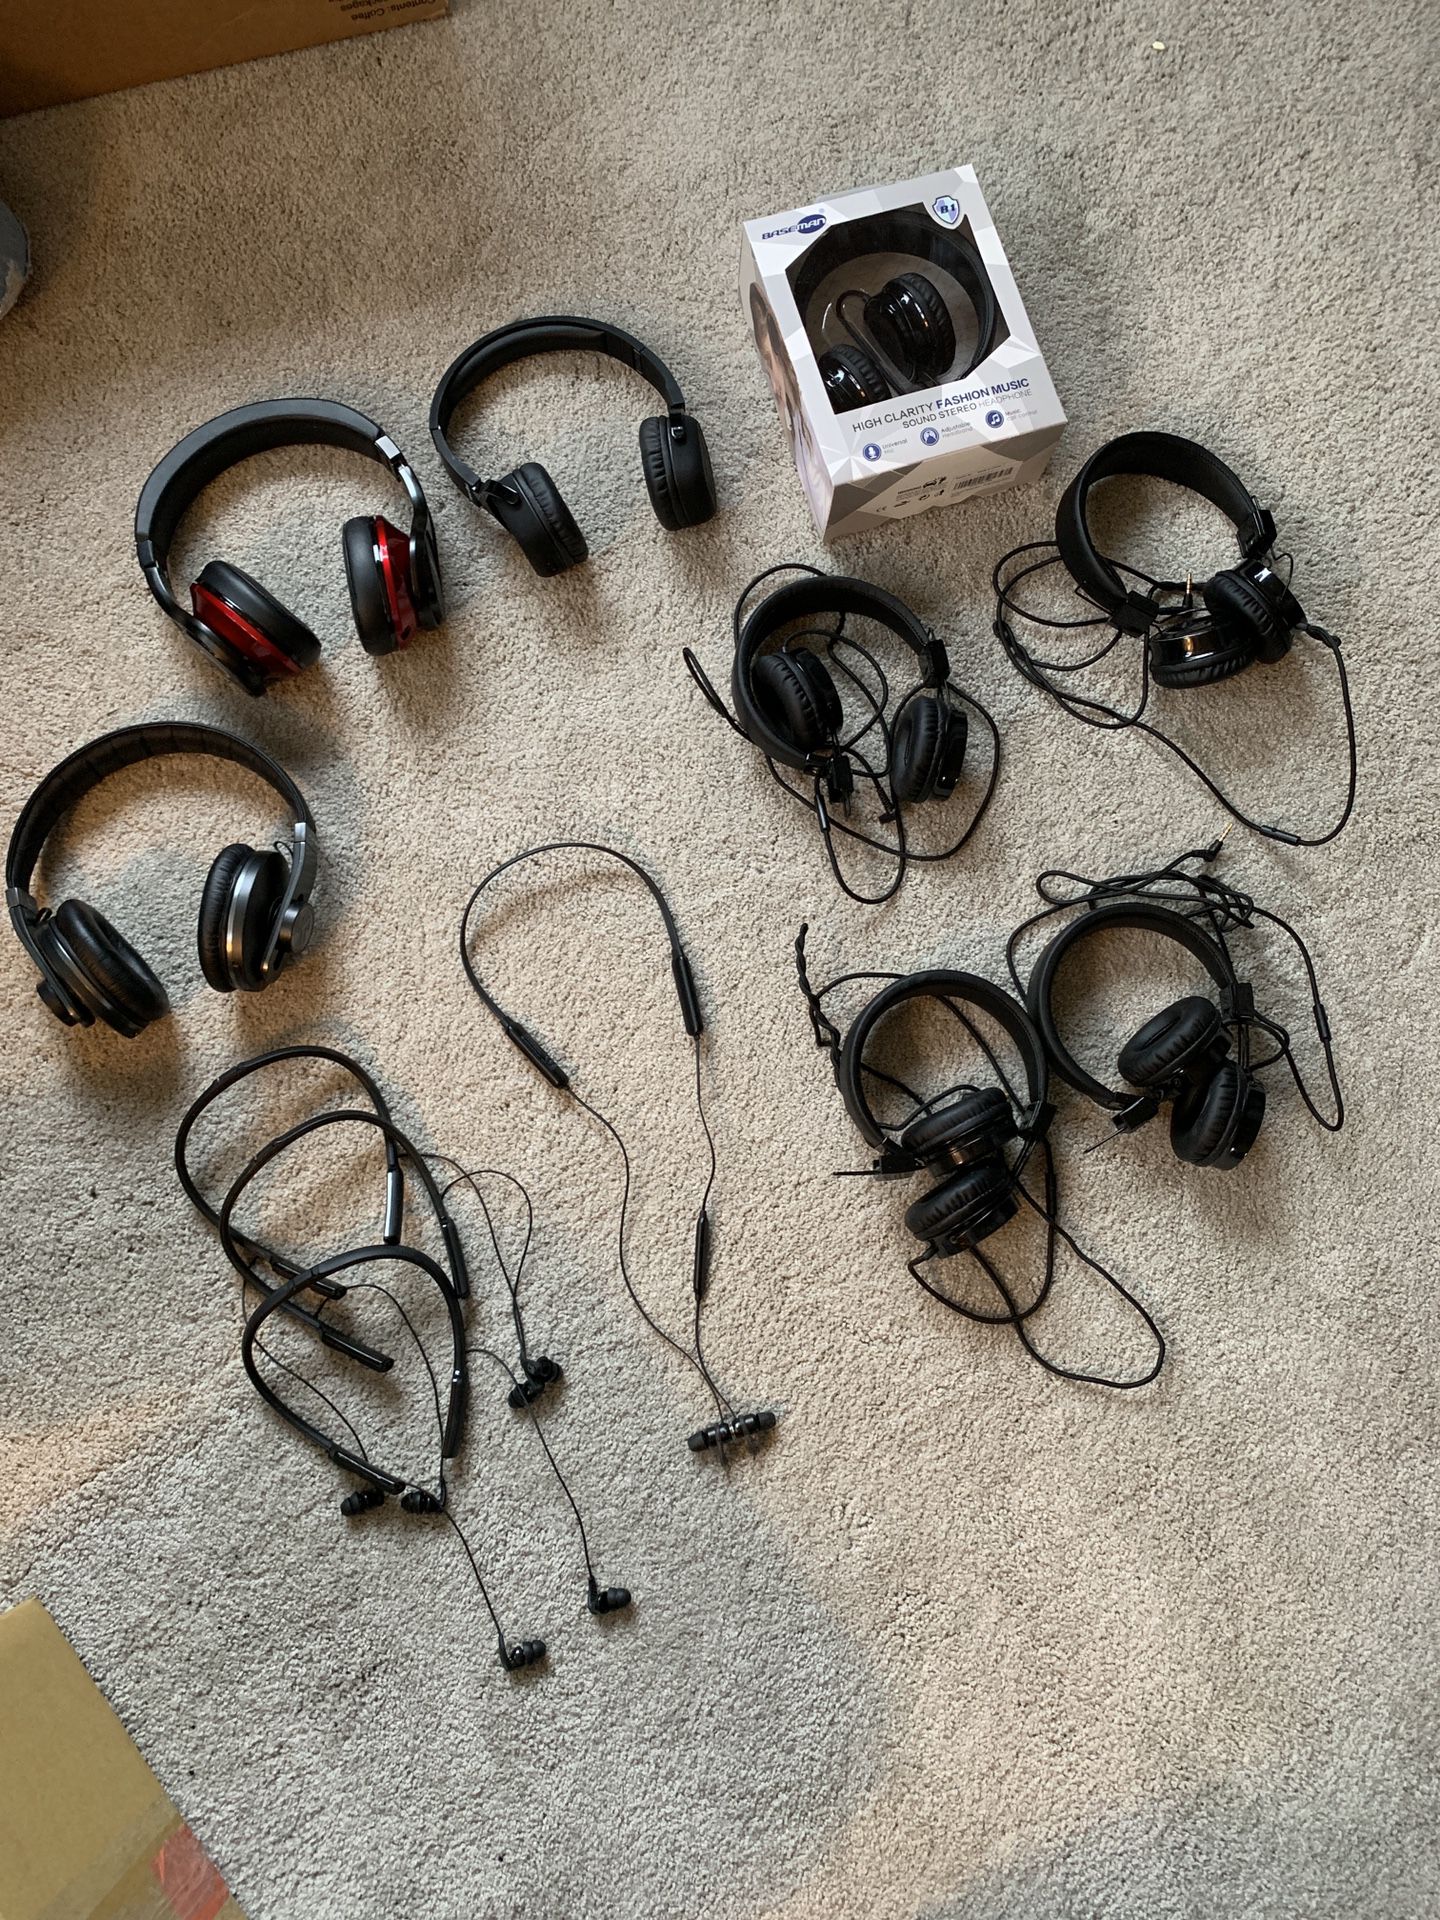 Lot of Headphones